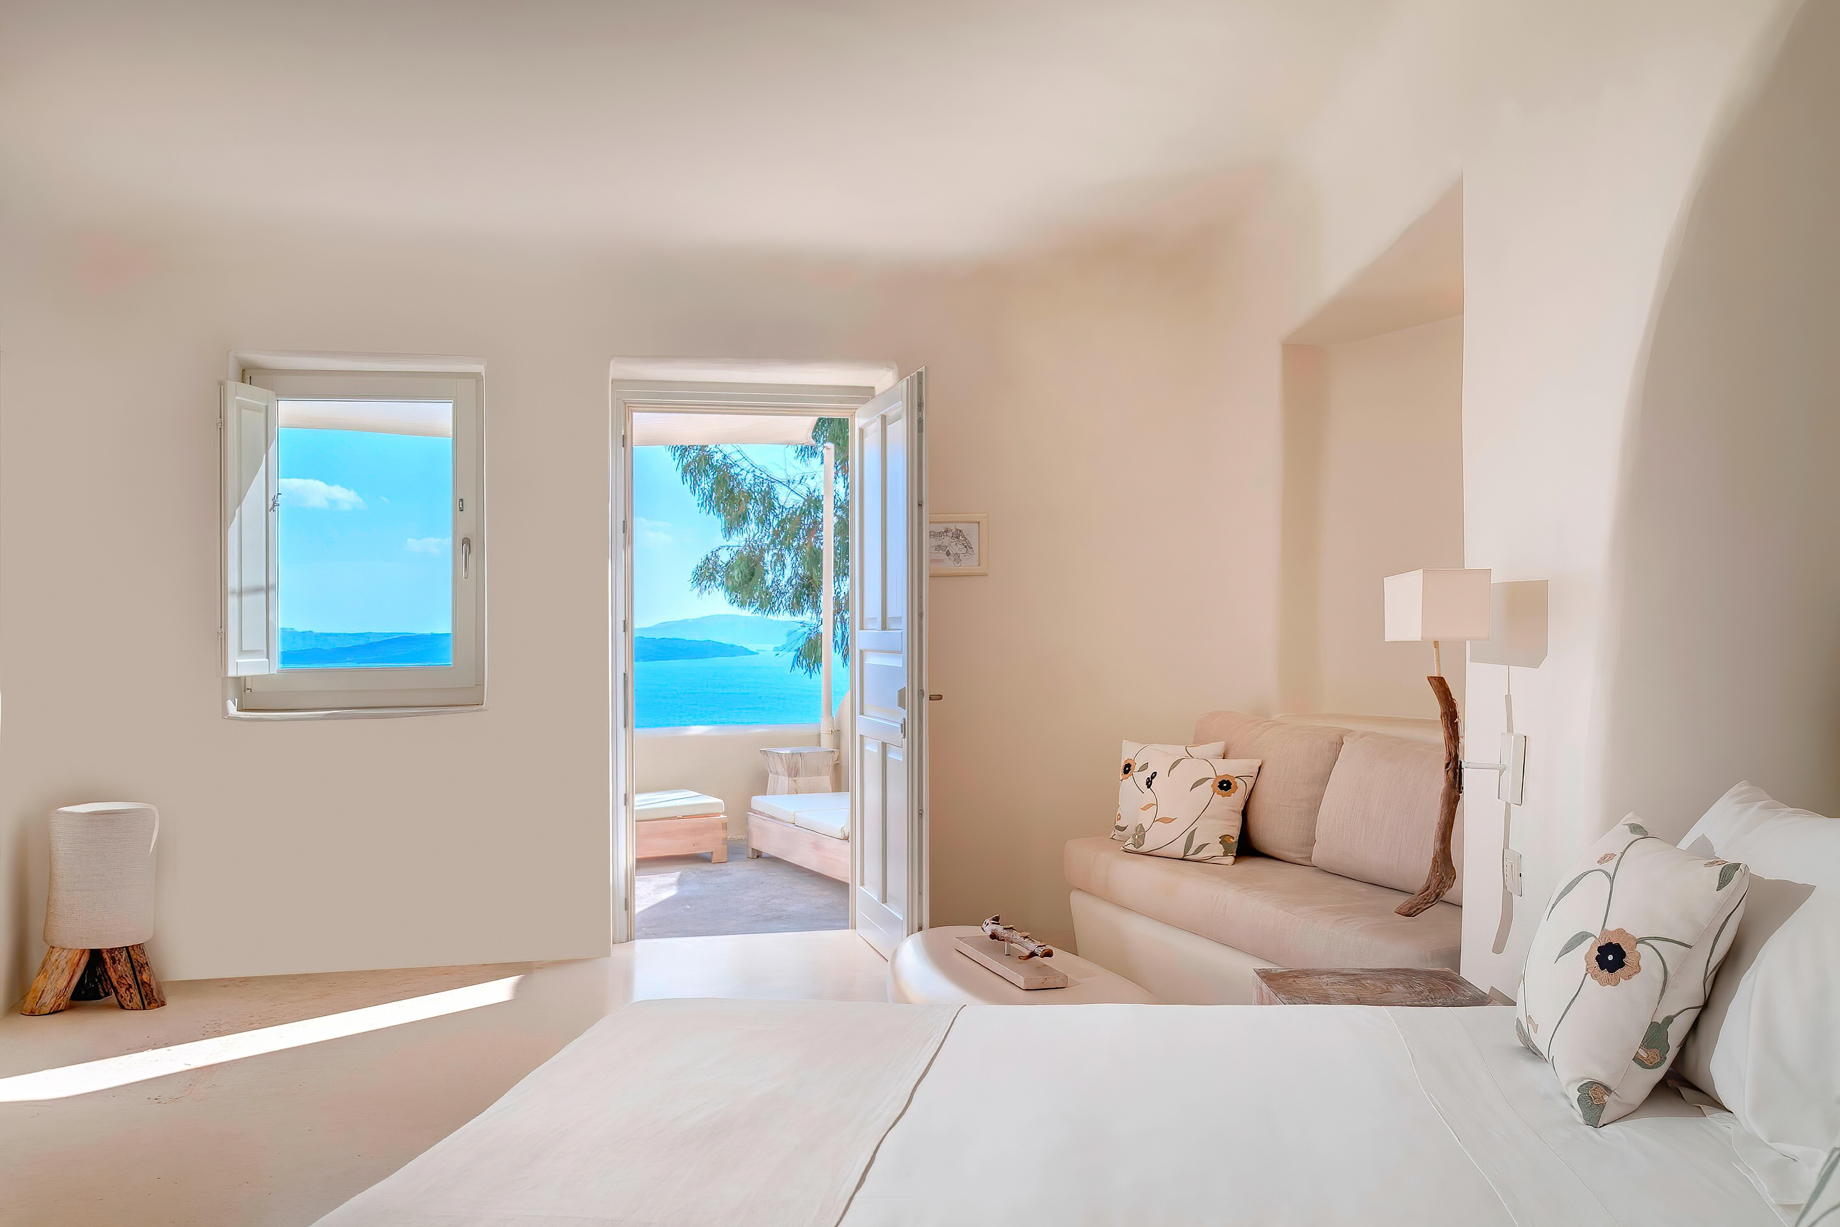 Mystique Hotel Santorini – Oia, Santorini Island, Greece - Wet Allure Suite